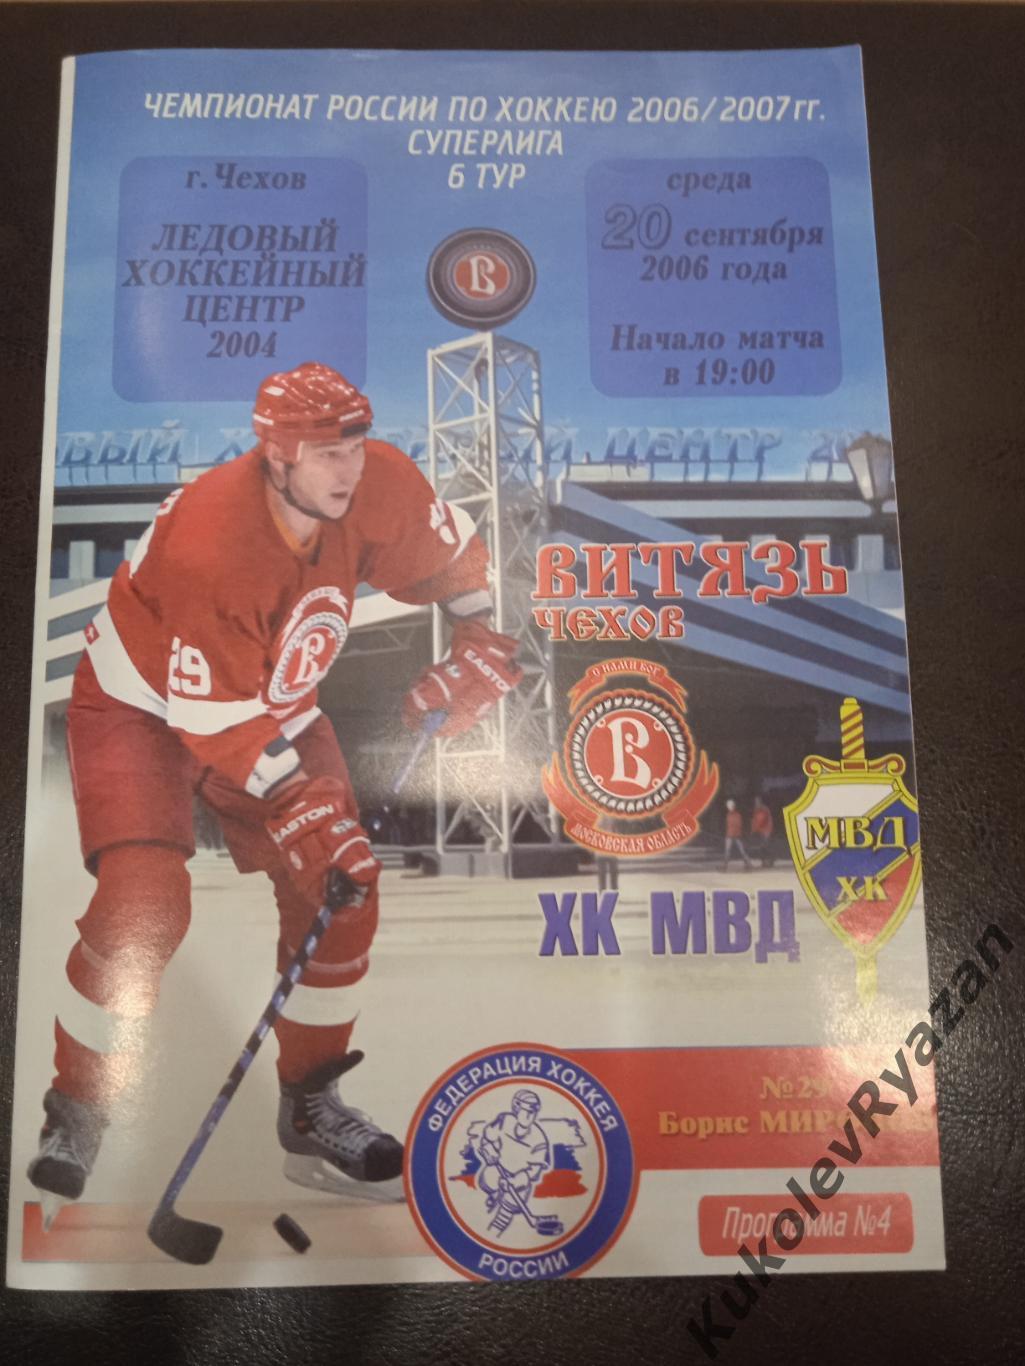 Хоккей Витязь ХК МВД 20.09.2006 Суперлига + вкладыш